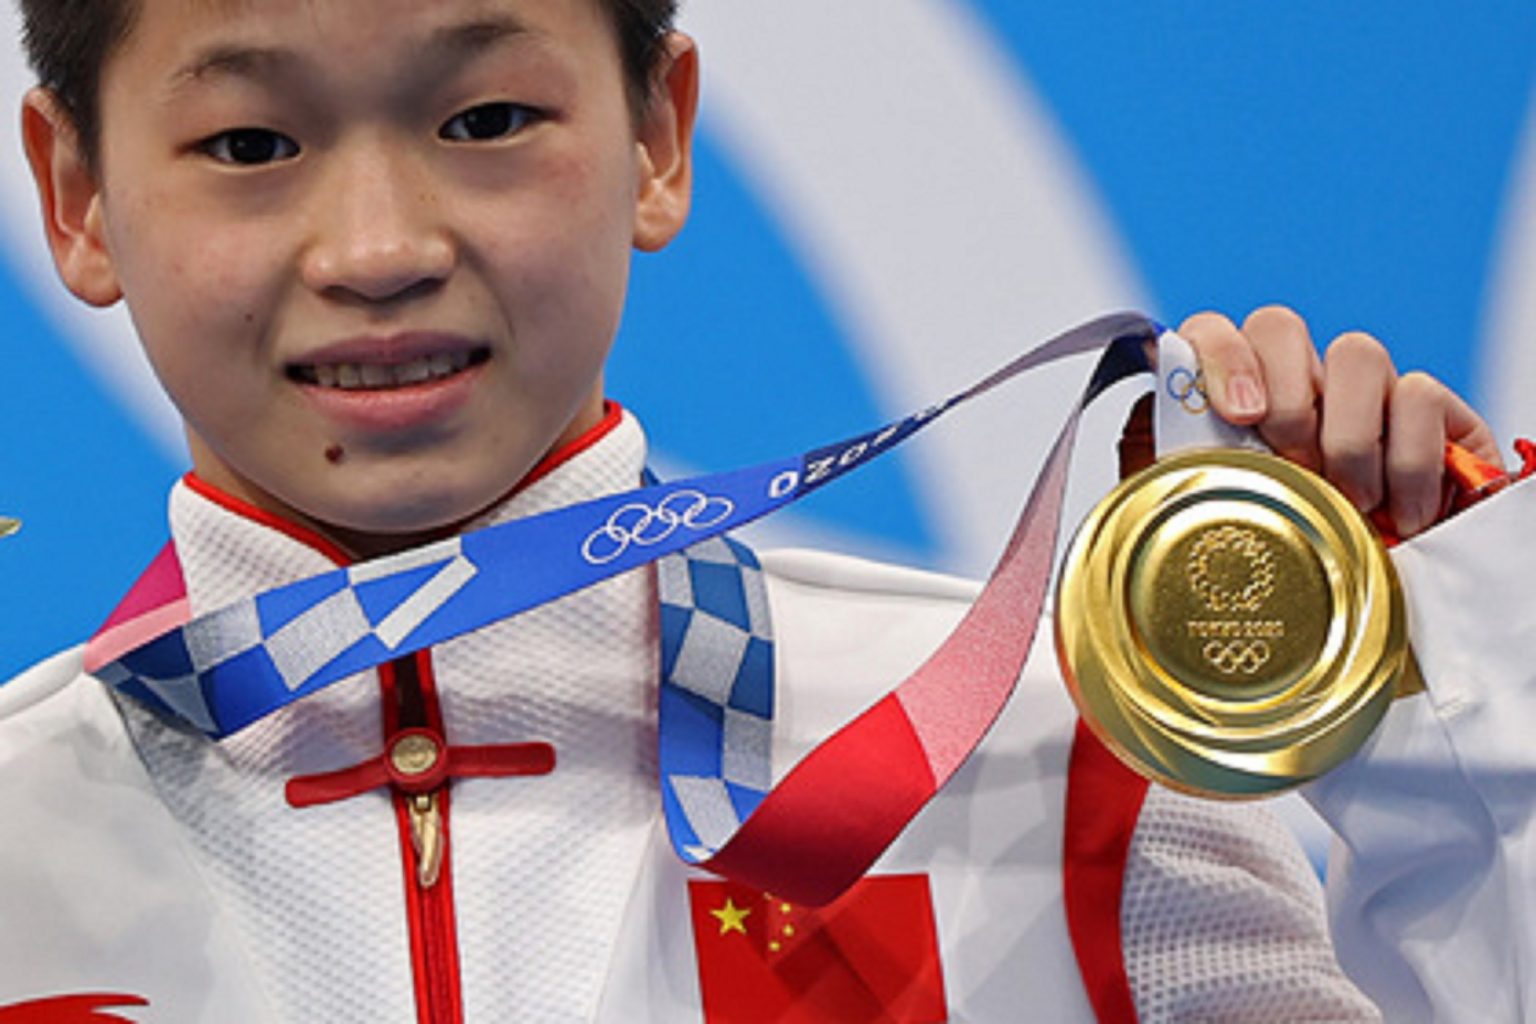 Ոչ մի կոպեկ չեմ վերցնի.Չինացի 14-ամյա օլիմպիական չեմպիոնուհու ընտանիքը հրաժարվել է 3 միլիարդ ռուբլի մրցանակից